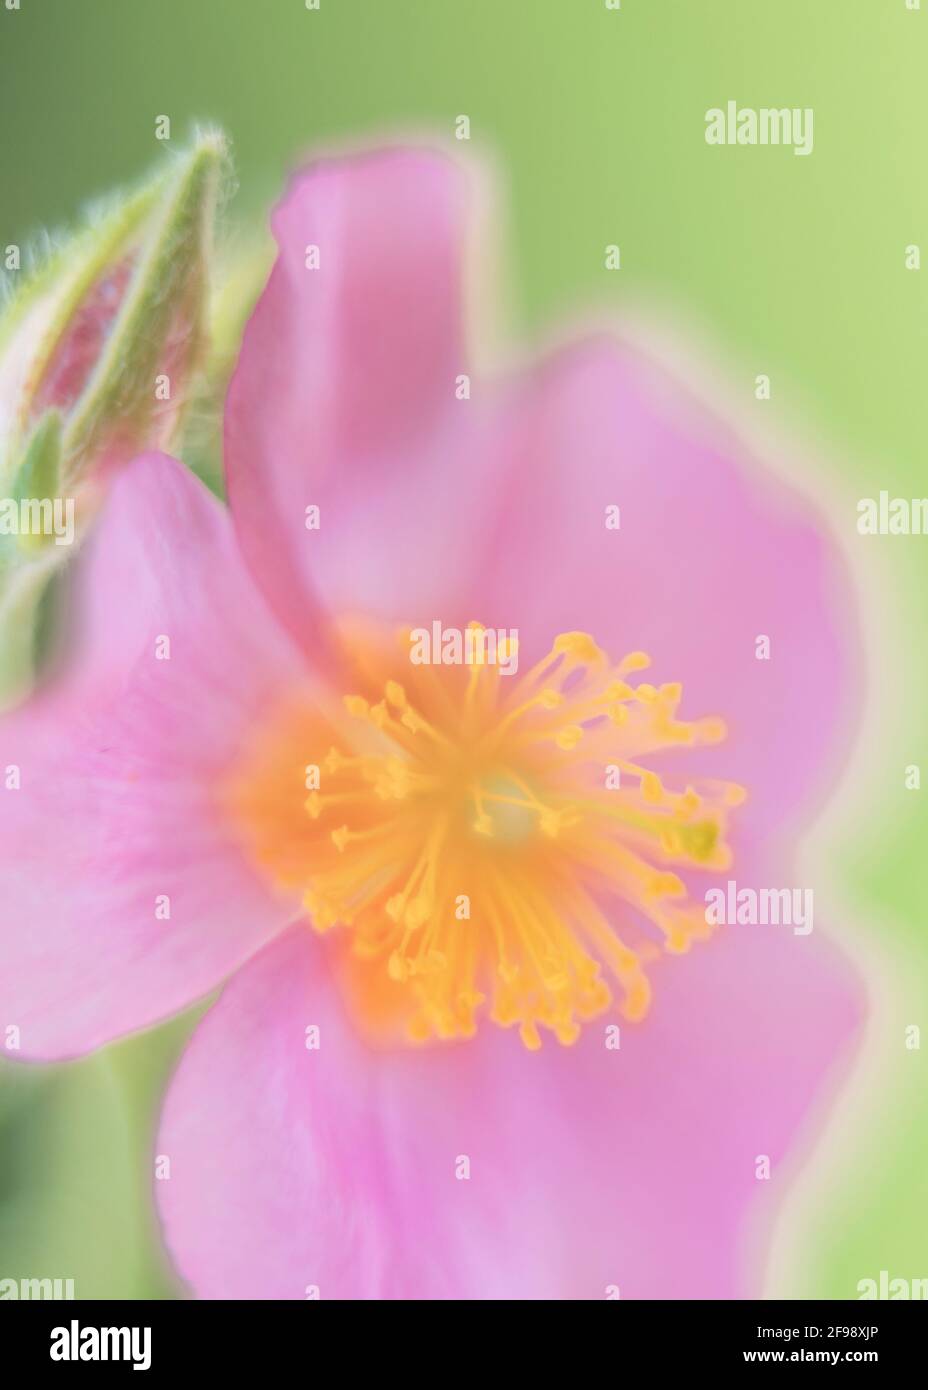 Heraldos de primavera, flores fotografiadas con una lente macro vintage Foto de stock